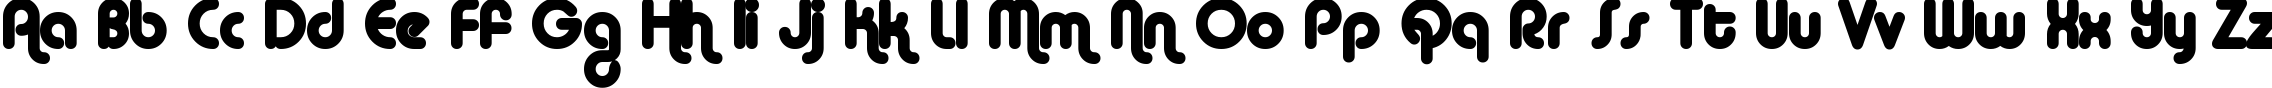 Пример написания английского алфавита шрифтом Alba Matter